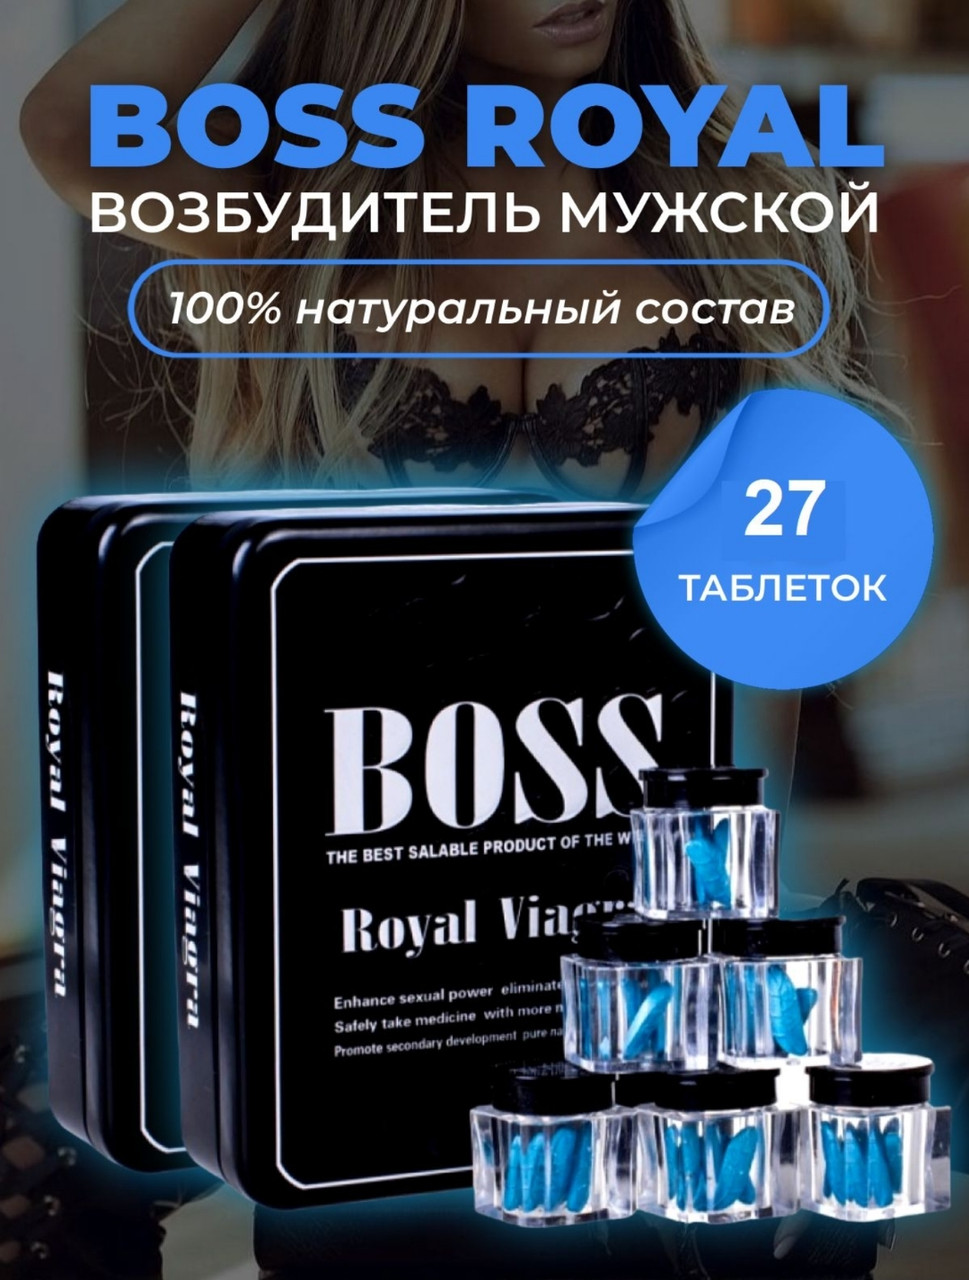 BOSS Royal Виагра королевская ( упаковка 27 табл ) мужской возбудитель